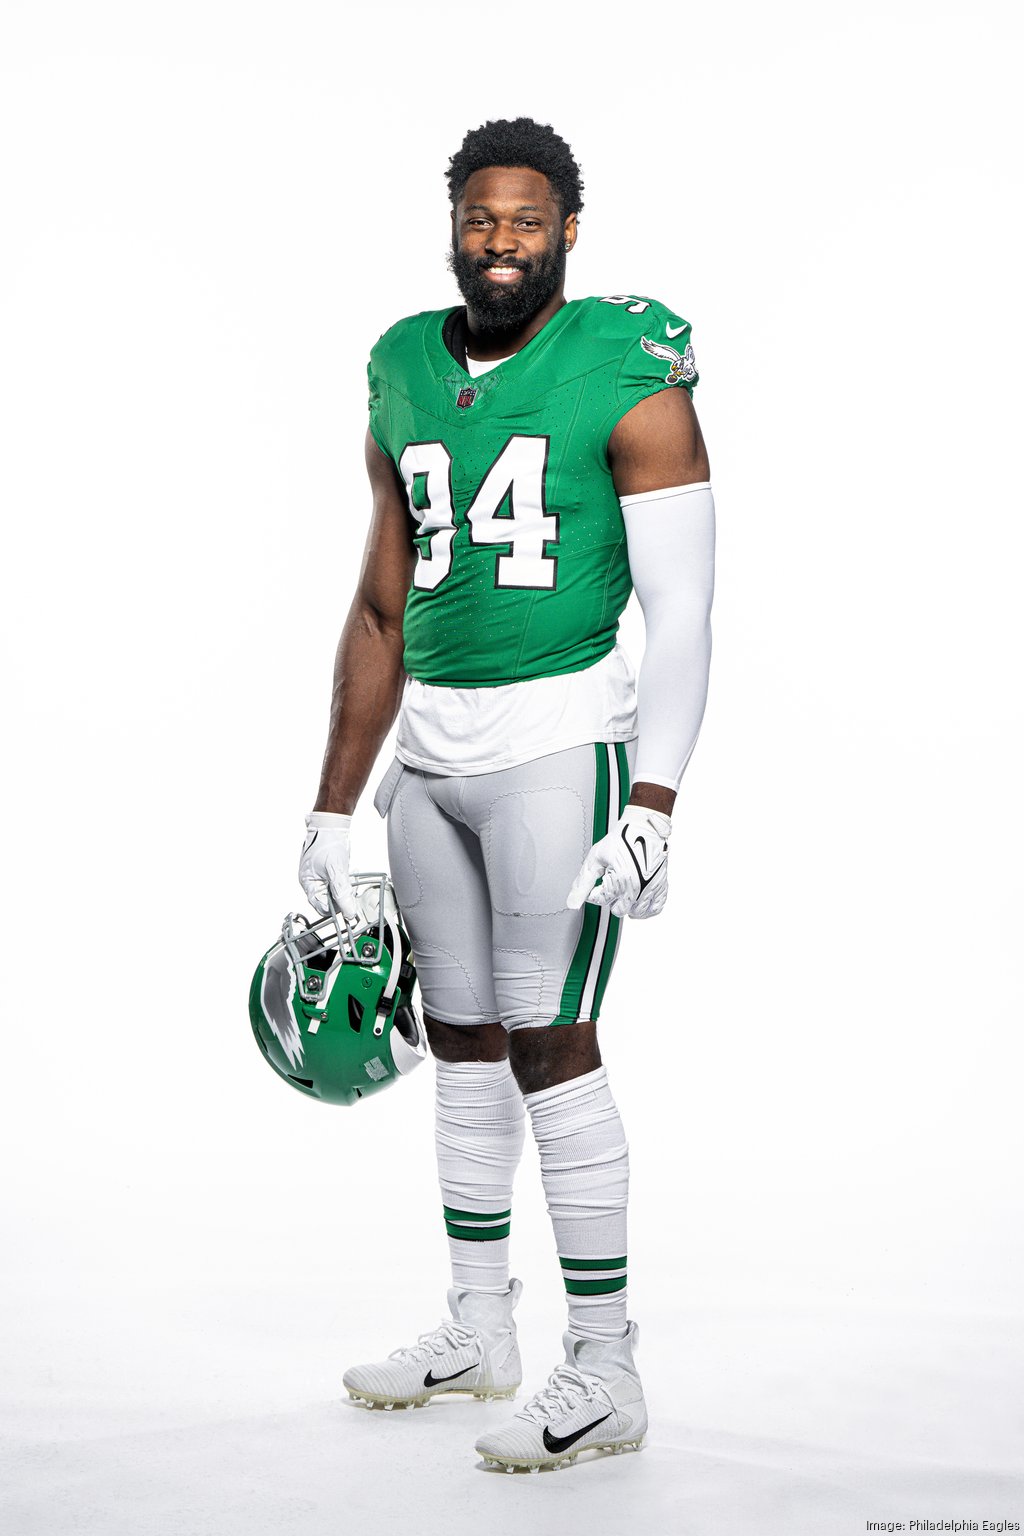 Philadelphia Eagles finally unveil Kelly green throwback uniforms